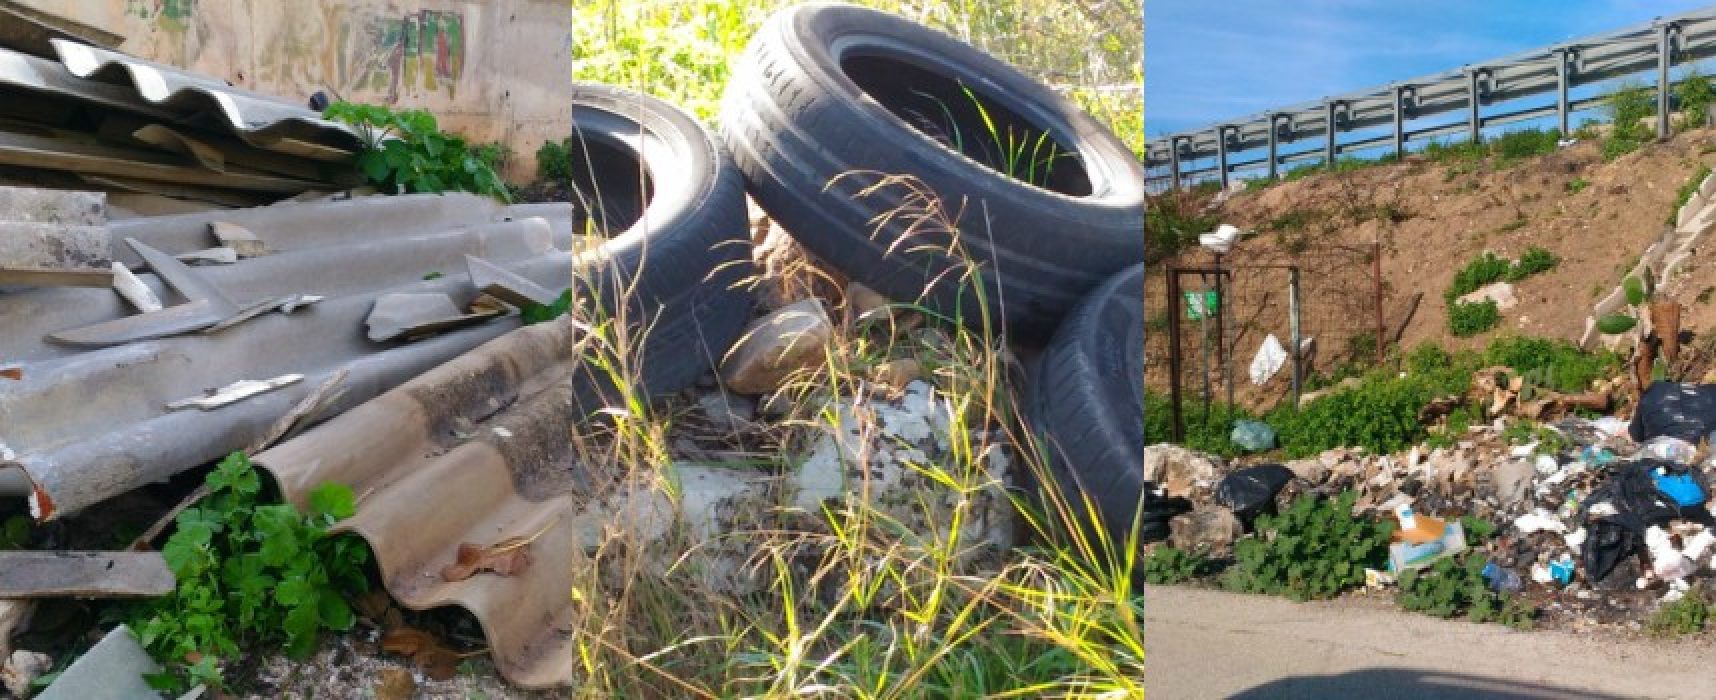 Federazione Pro Natura: “Continua l’abbandono illegale di rifiuti, c’è anche amianto” / FOTO